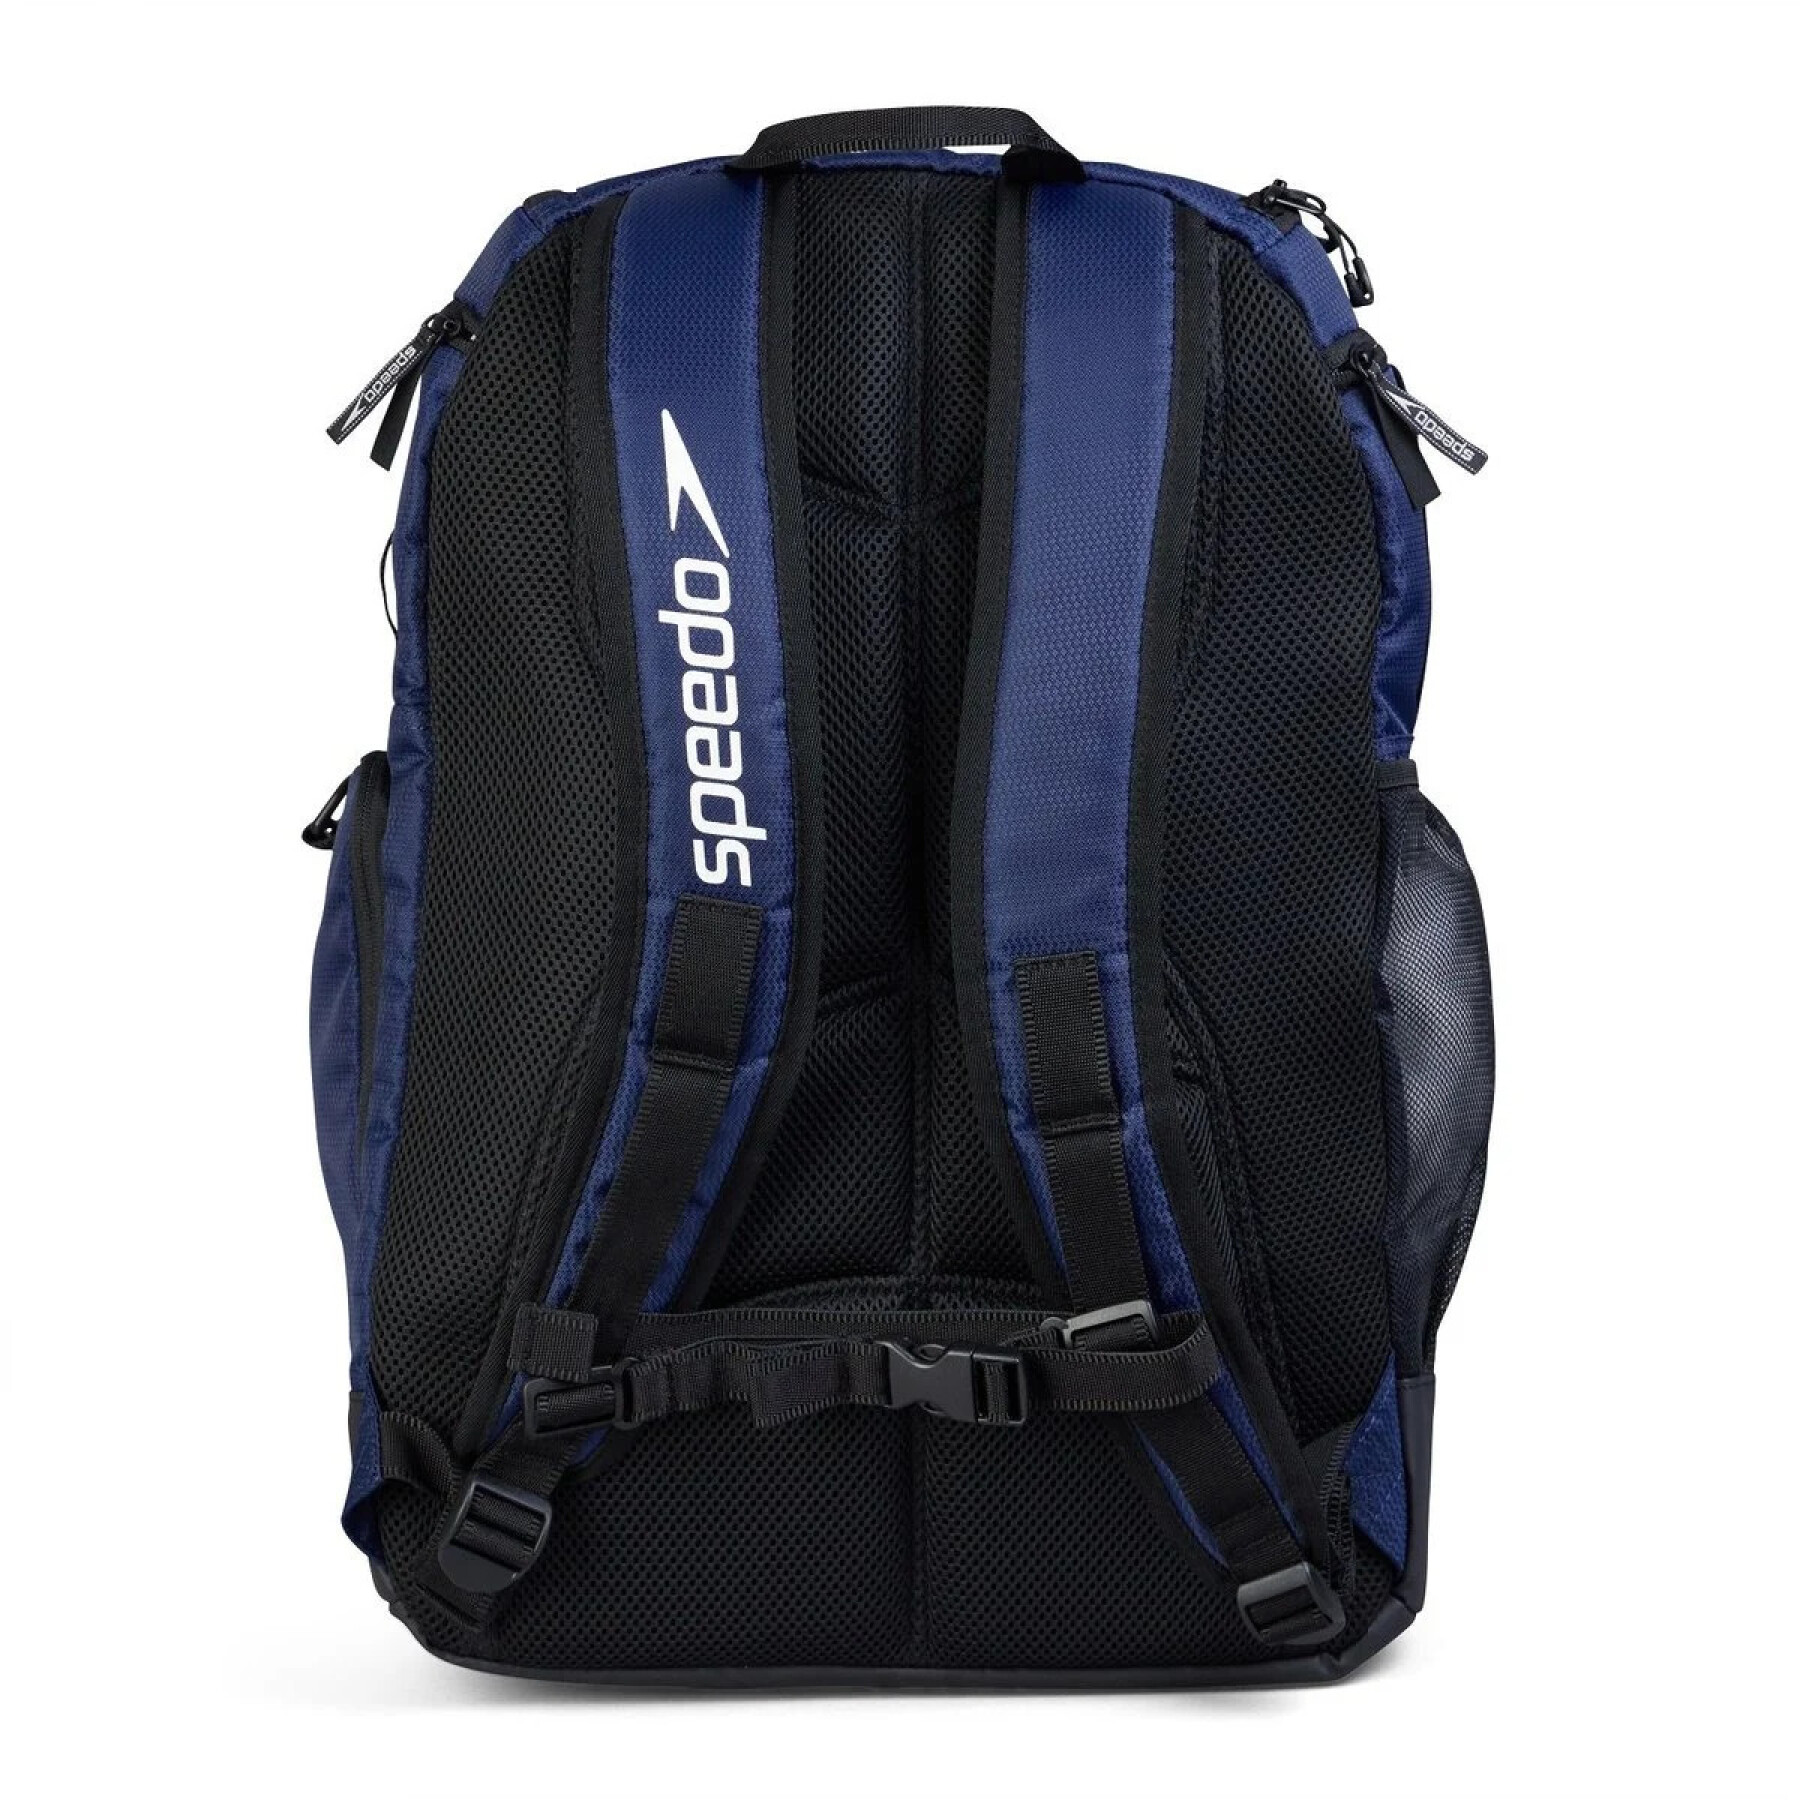 Backpack Speedo Teamster 2.0